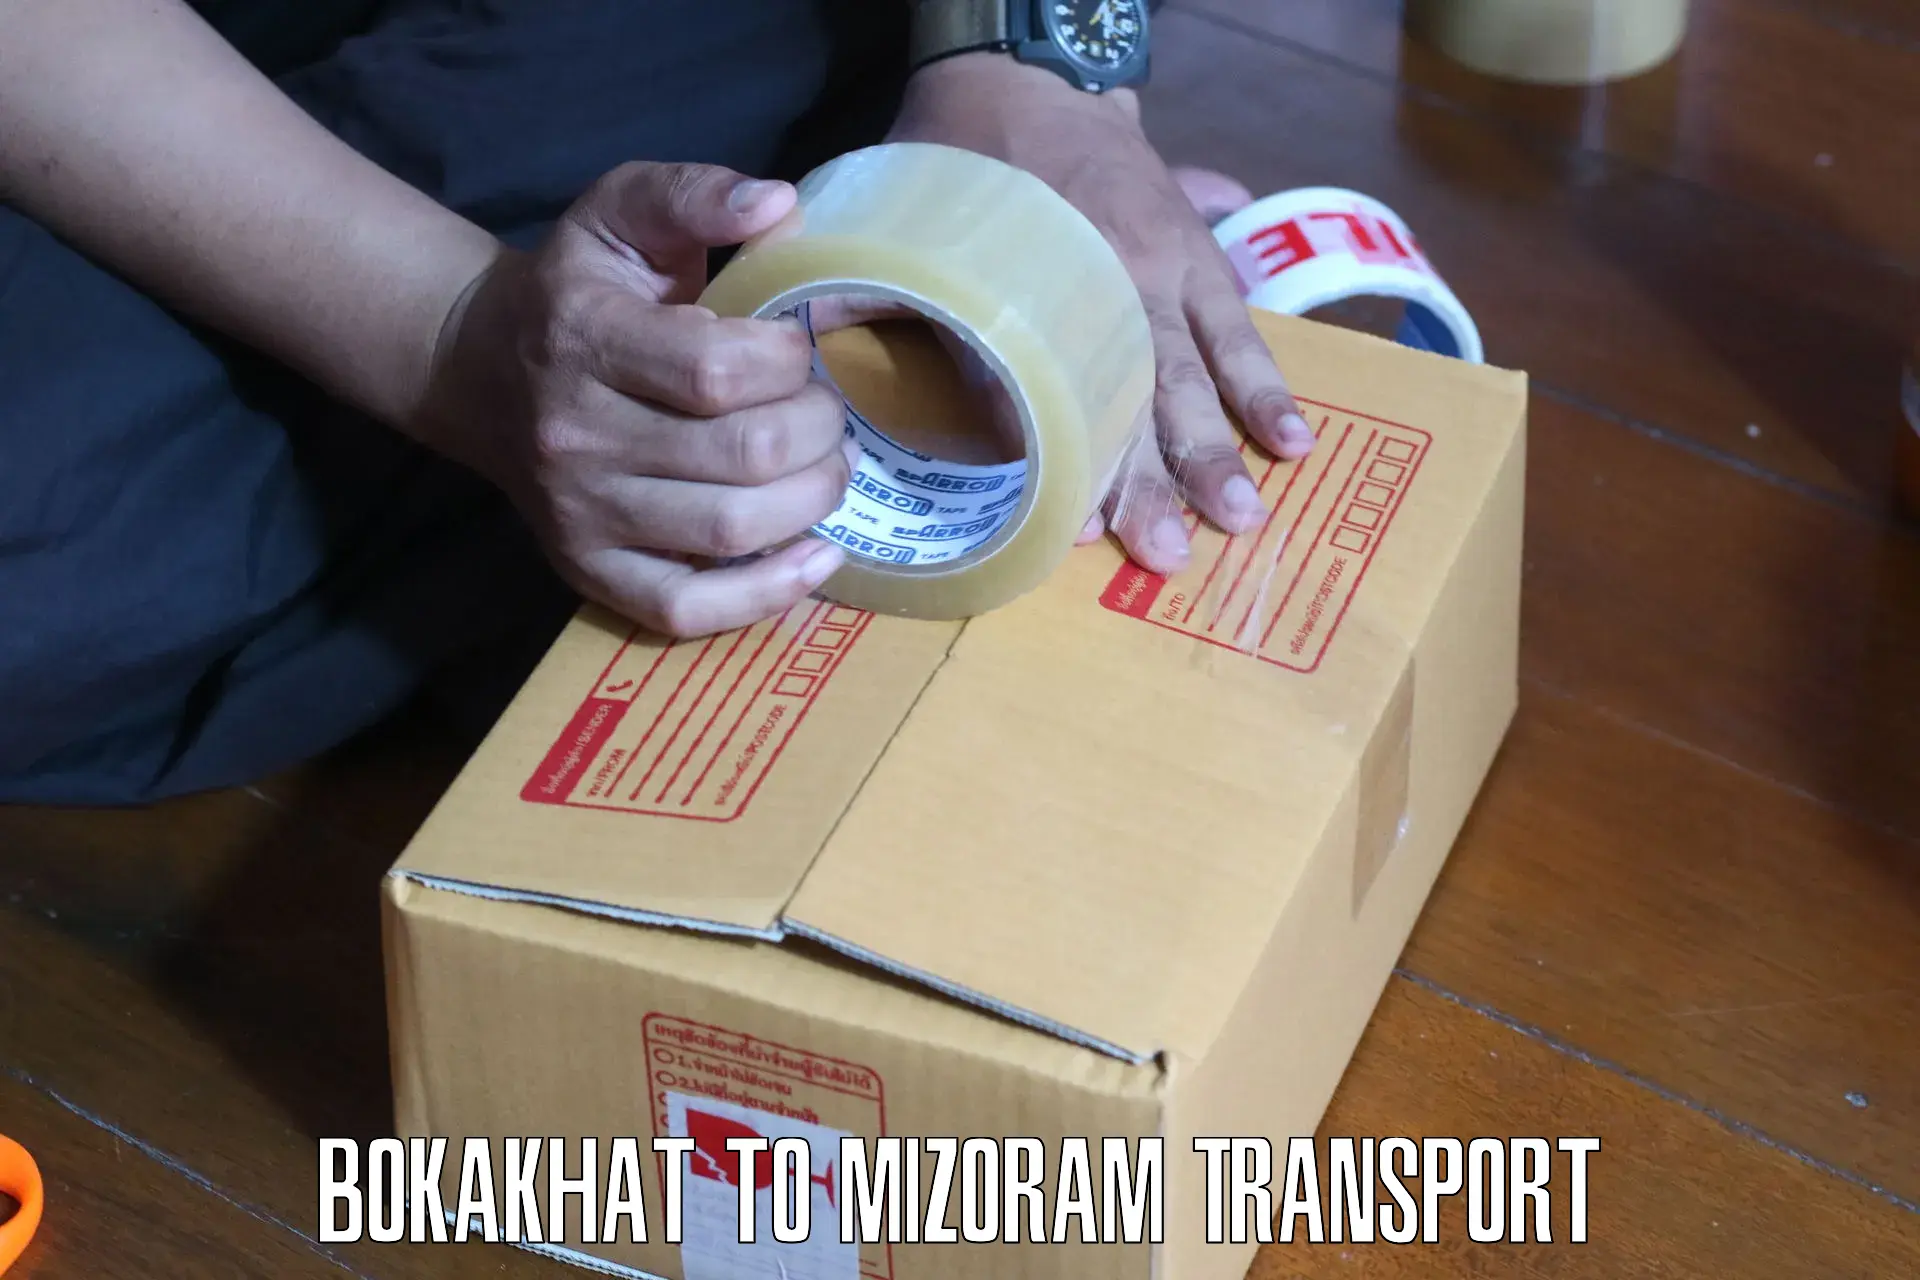 Transport in sharing Bokakhat to Aizawl